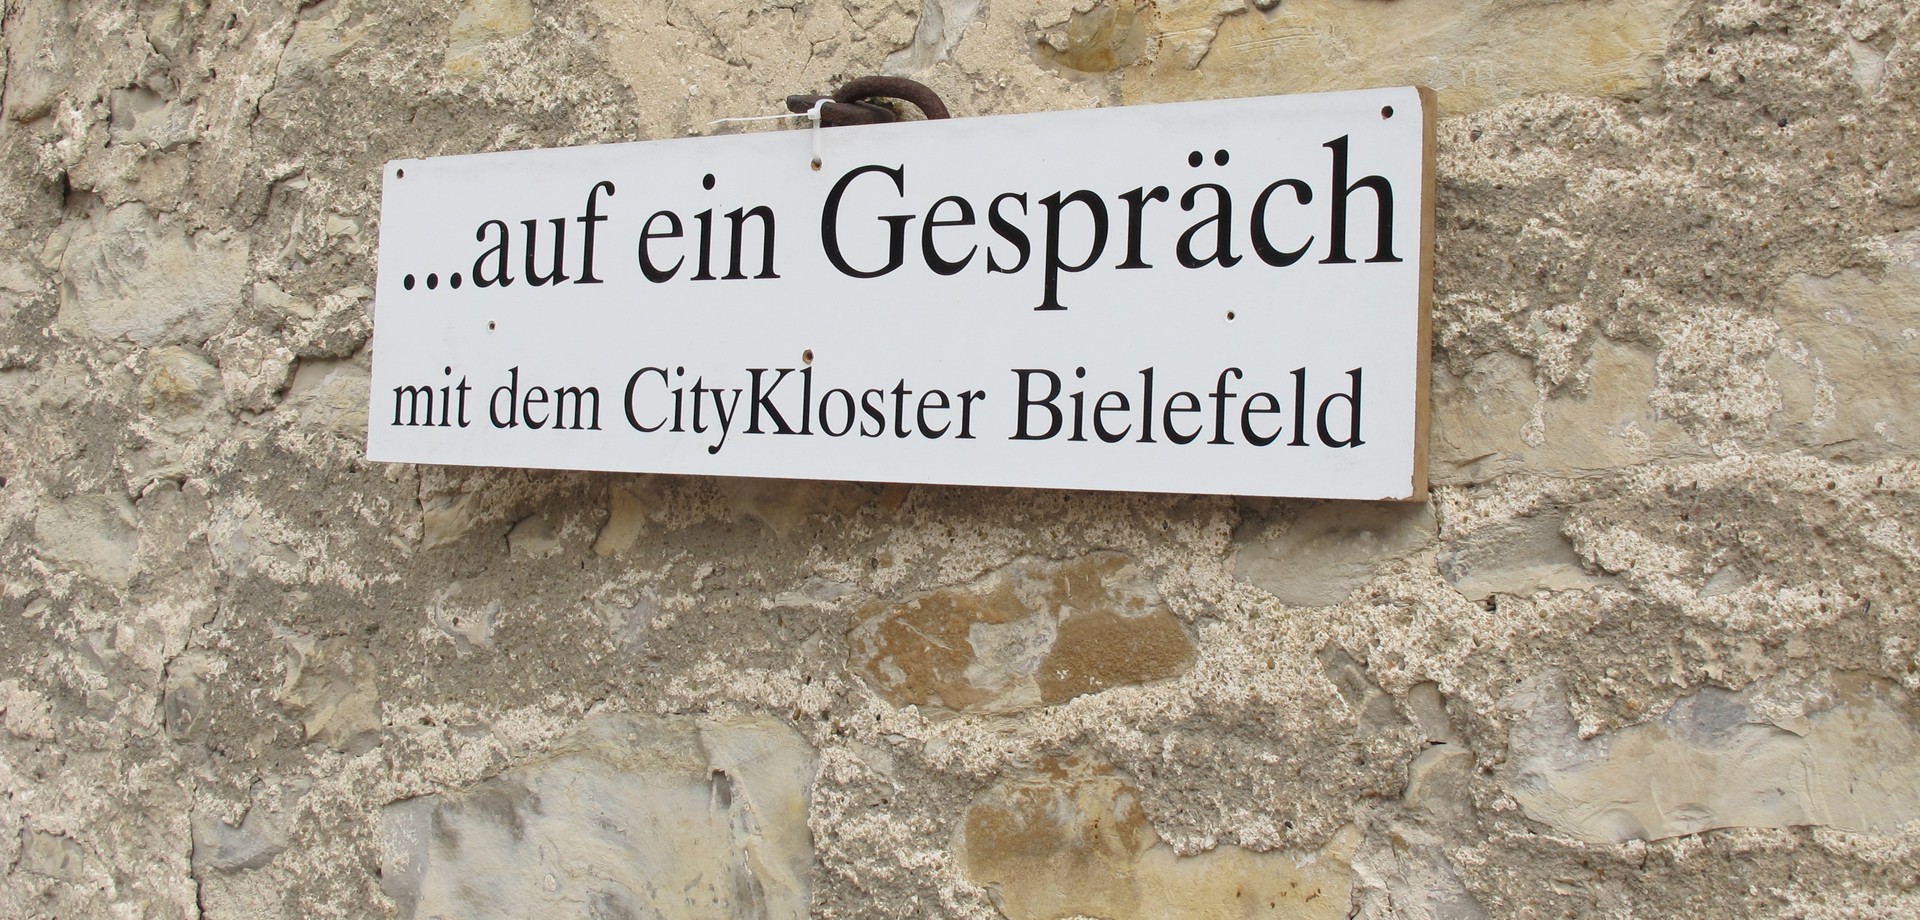 Auf dem Foto sieht man ein Schild mit der Aufschrift "... auf ein Gespräch mit dem CityKloster Bielefeld".

Foto: CityKloster Bielefeld